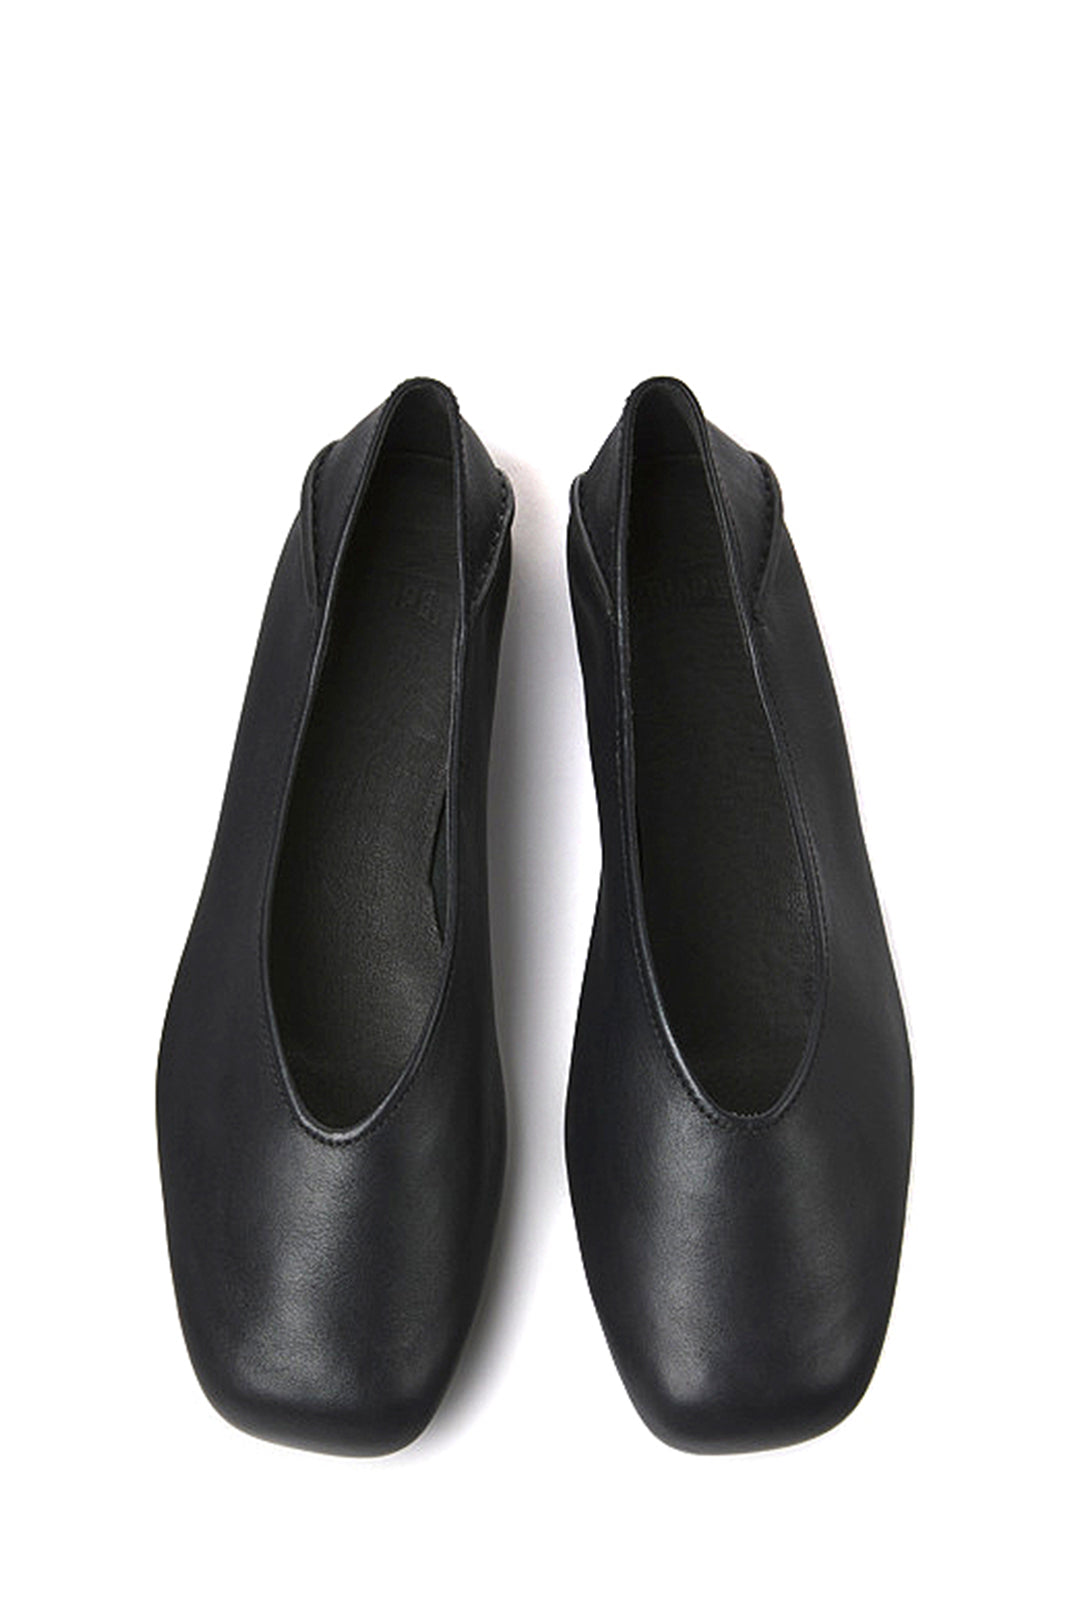 Camper Myra Ballet Shoes, Black